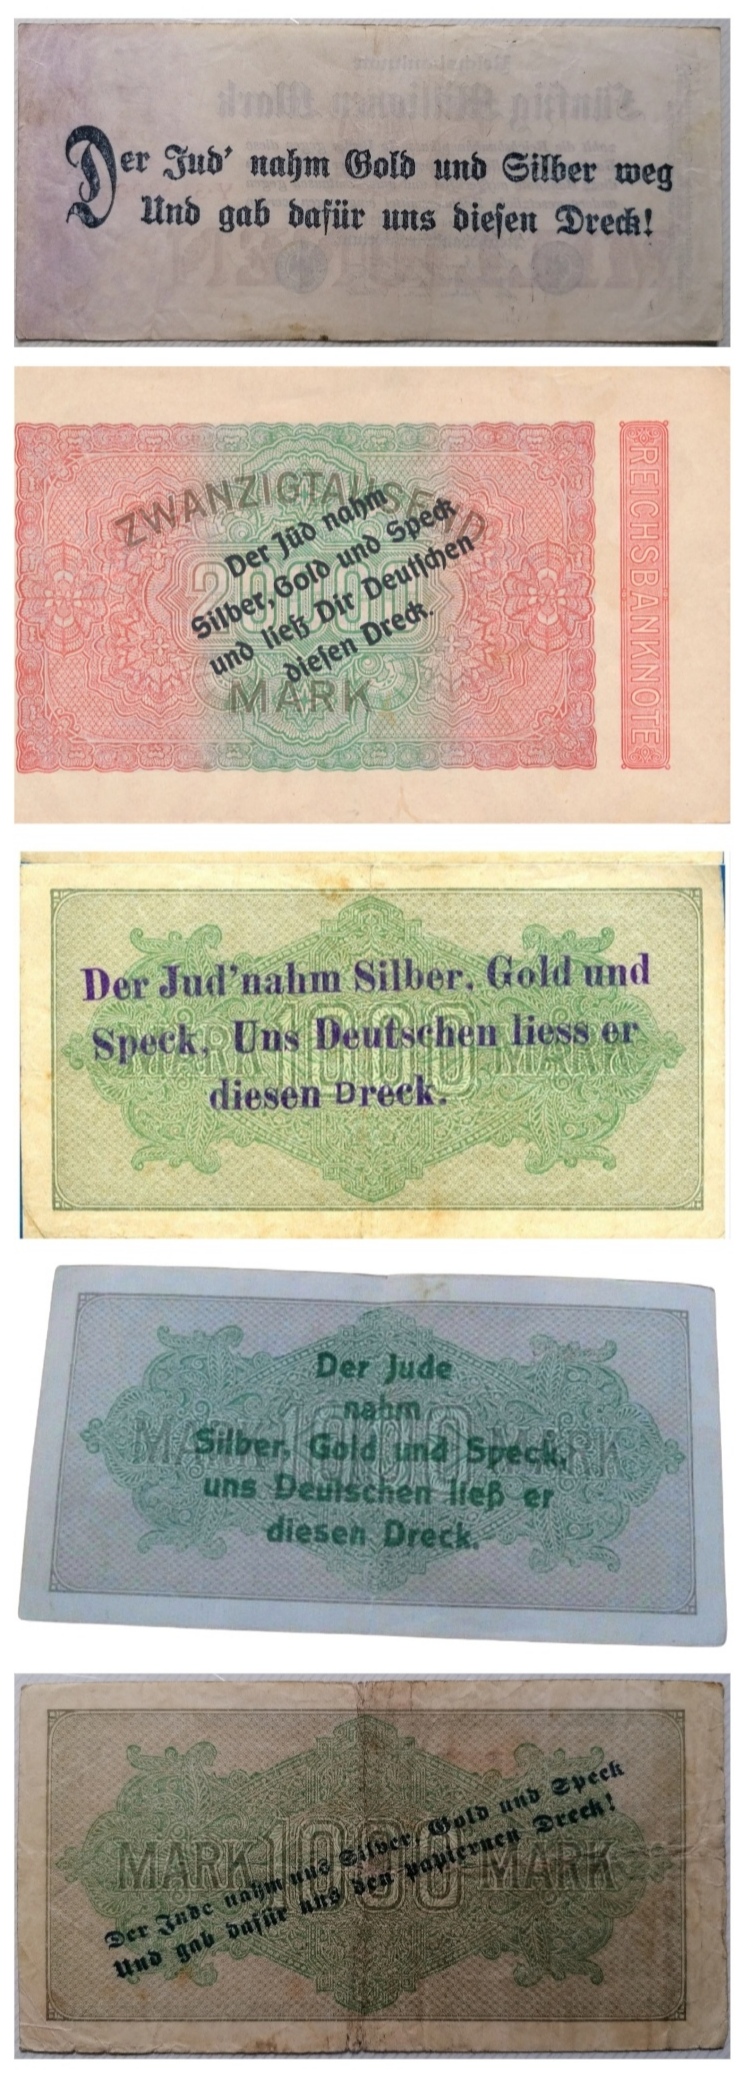 Un gran día para mi colección de propaganda electoral alemana, sobreimpresa en billetes, de partidos políticos alemanes ultranacionalistas y antisemitas 1923-1933.  Scree437